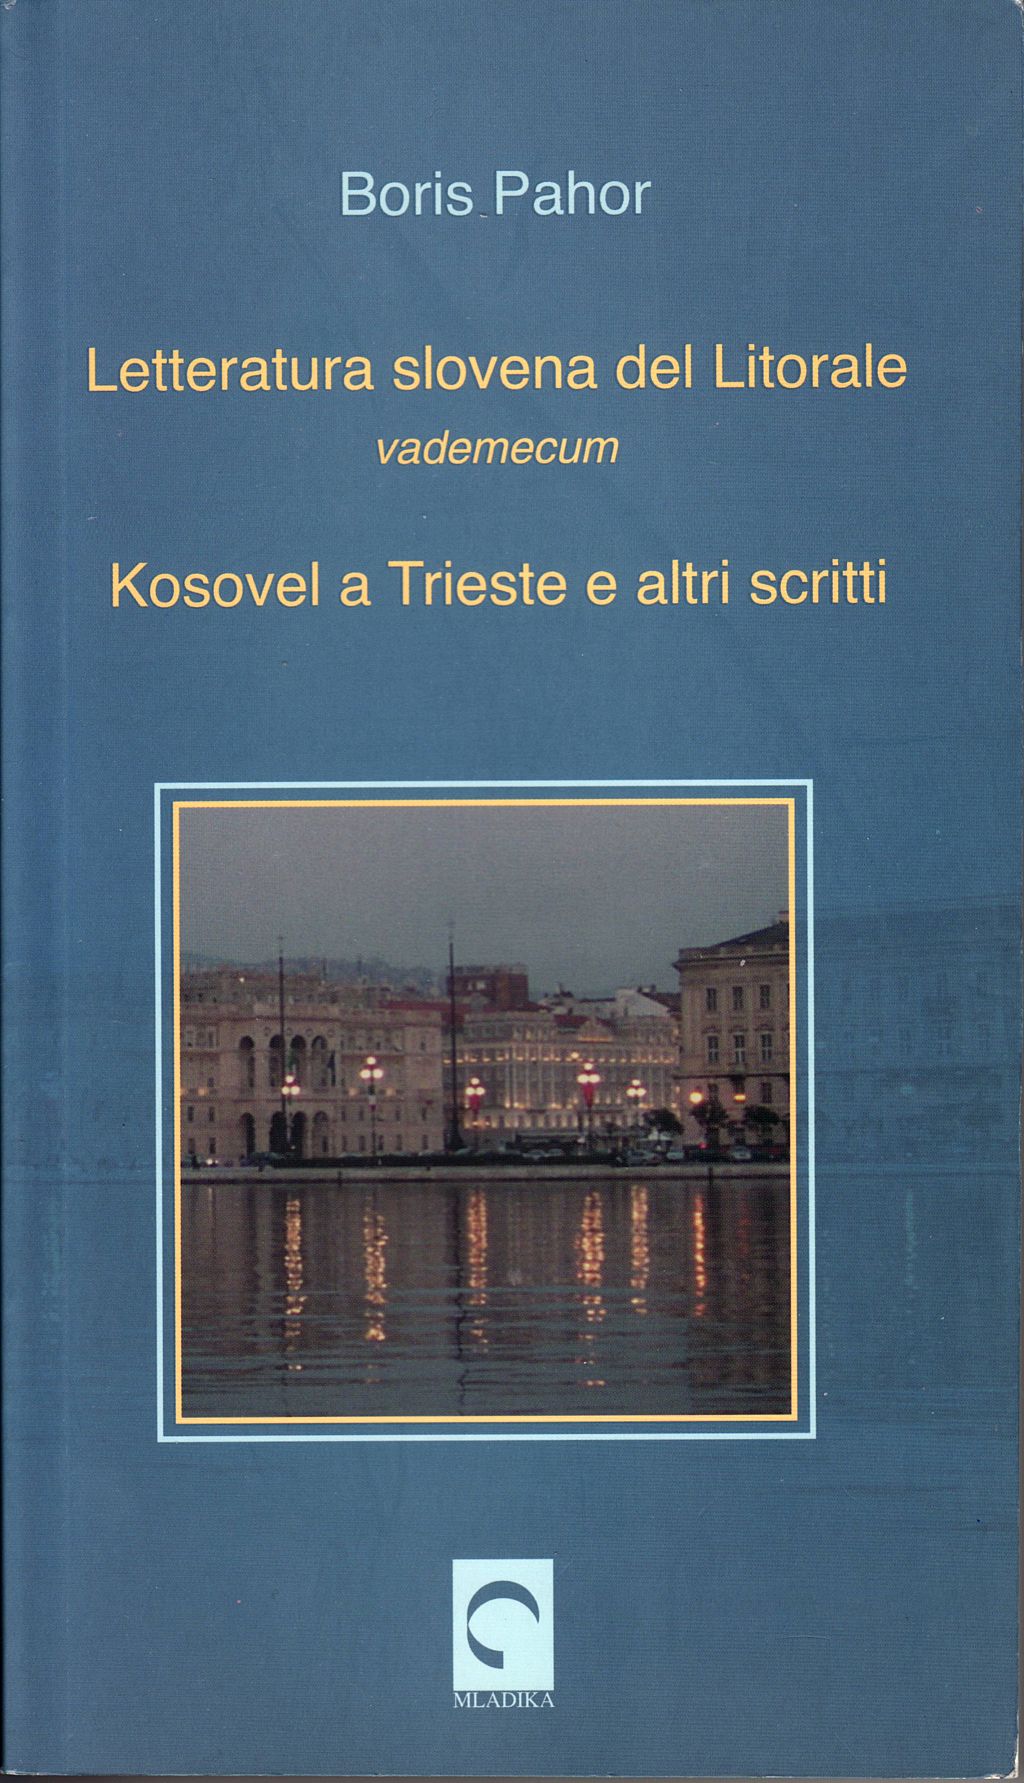 Letteratura slovena del Litorale (vademecum)